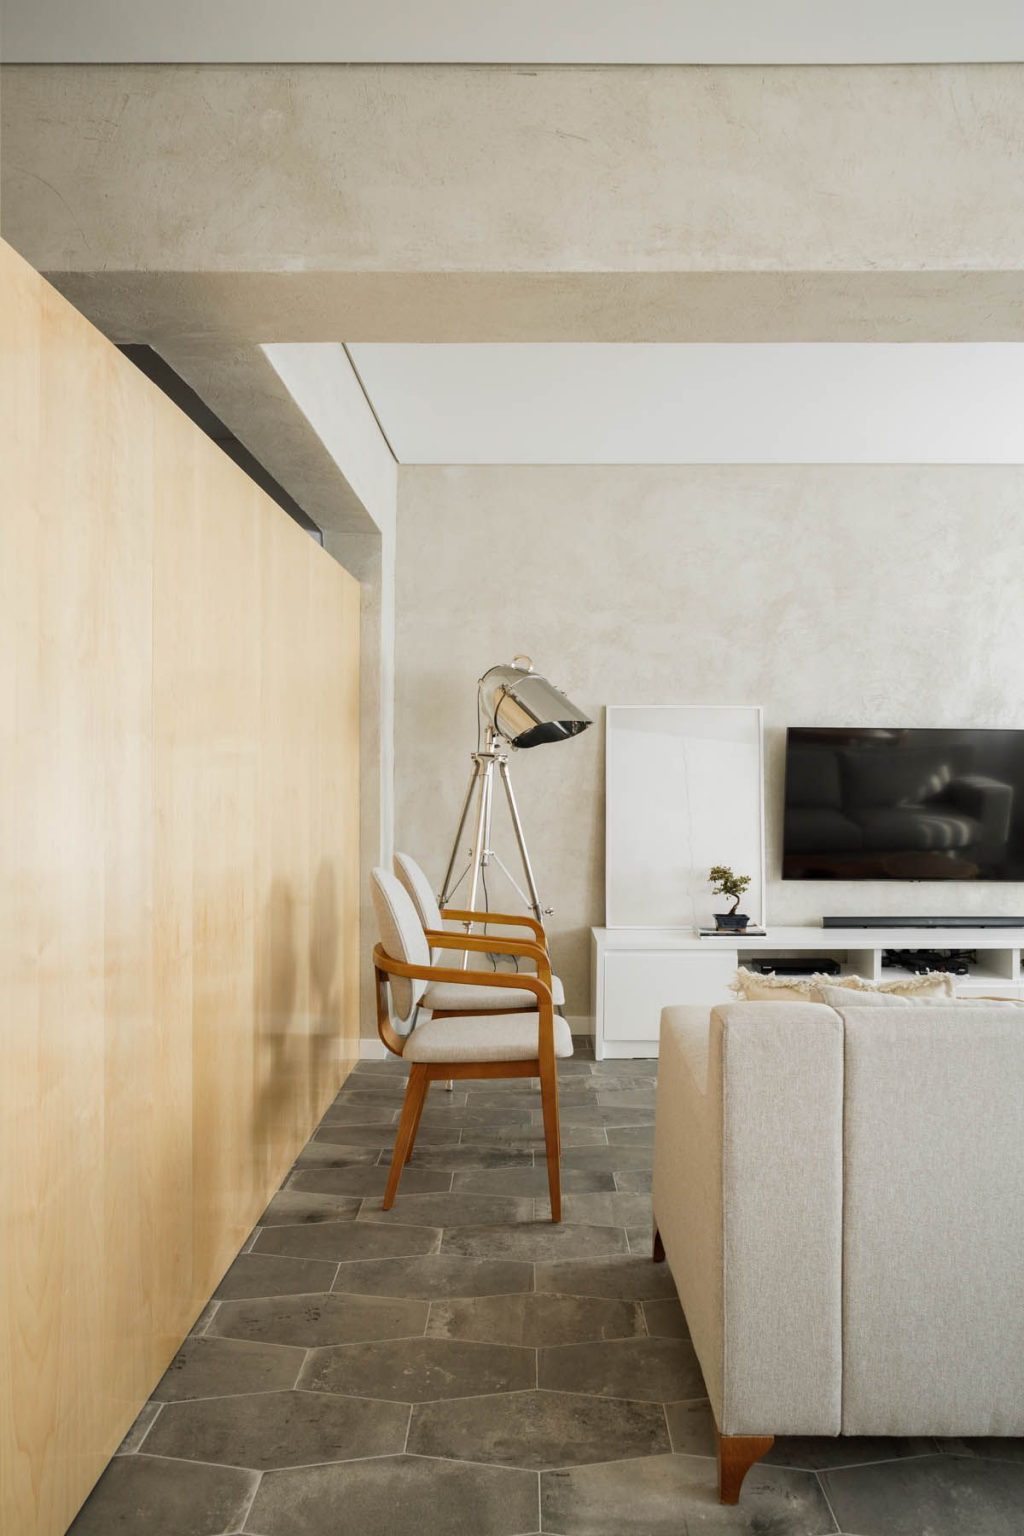 Ανακαινισμένο διαμέρισμα κατά τη διάρκεια της πανδημίας, αρχιτεκτονικές του Paulo Moreira